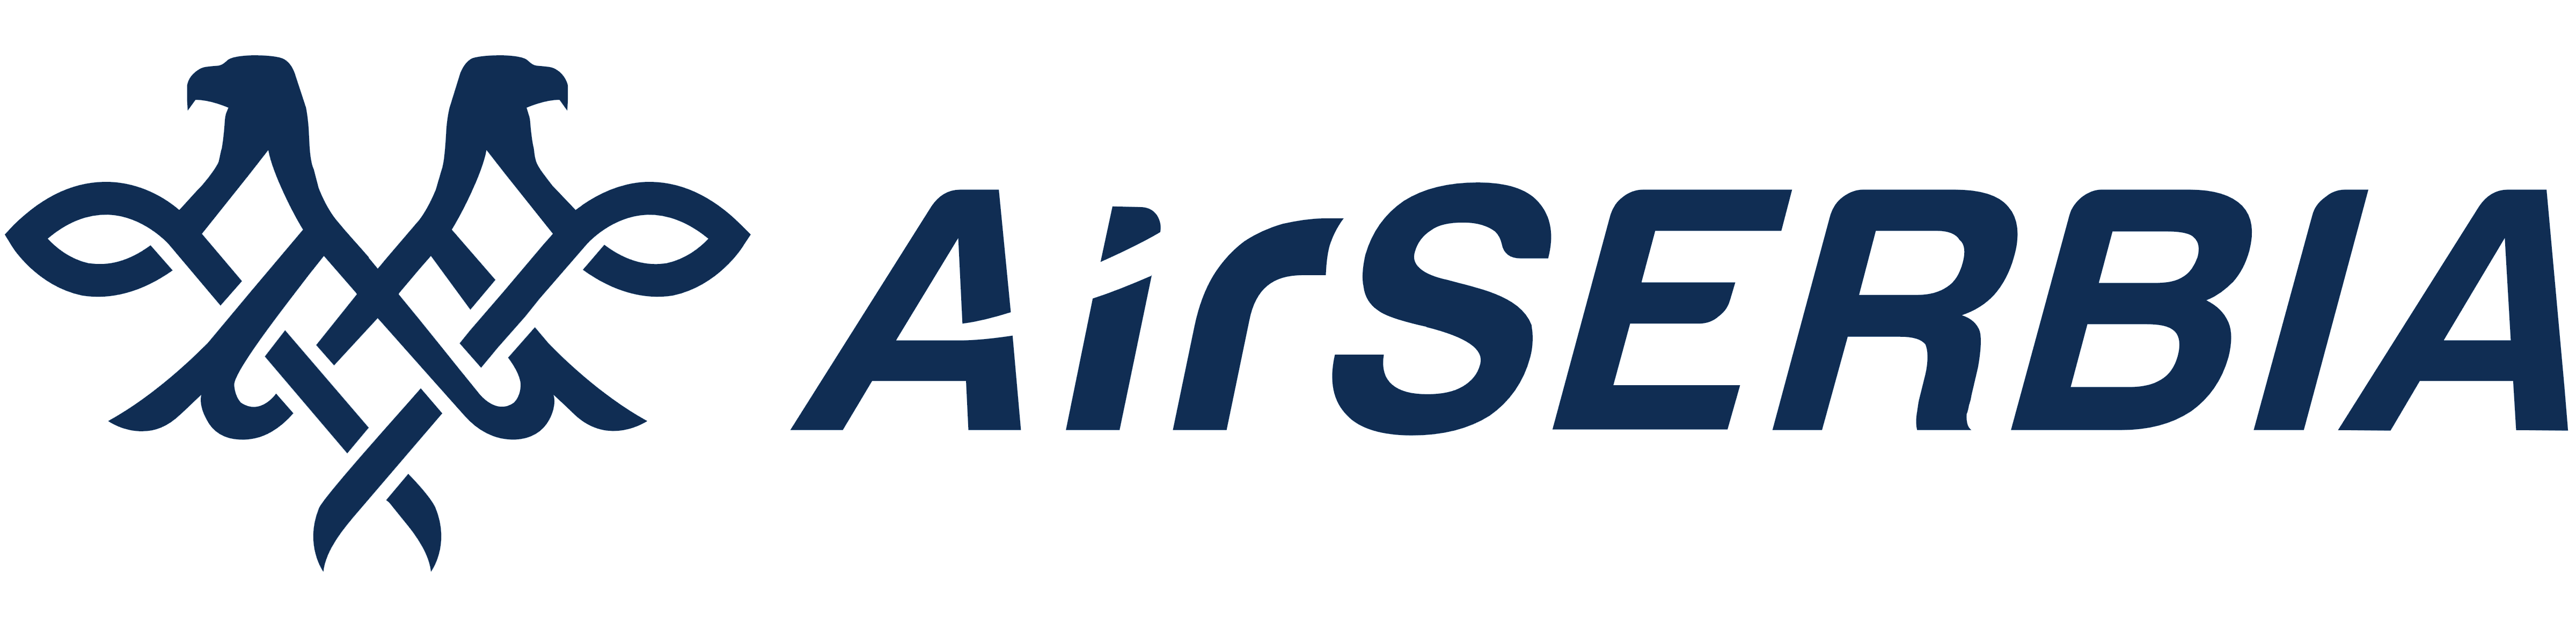 Air Serbia logo, logotype